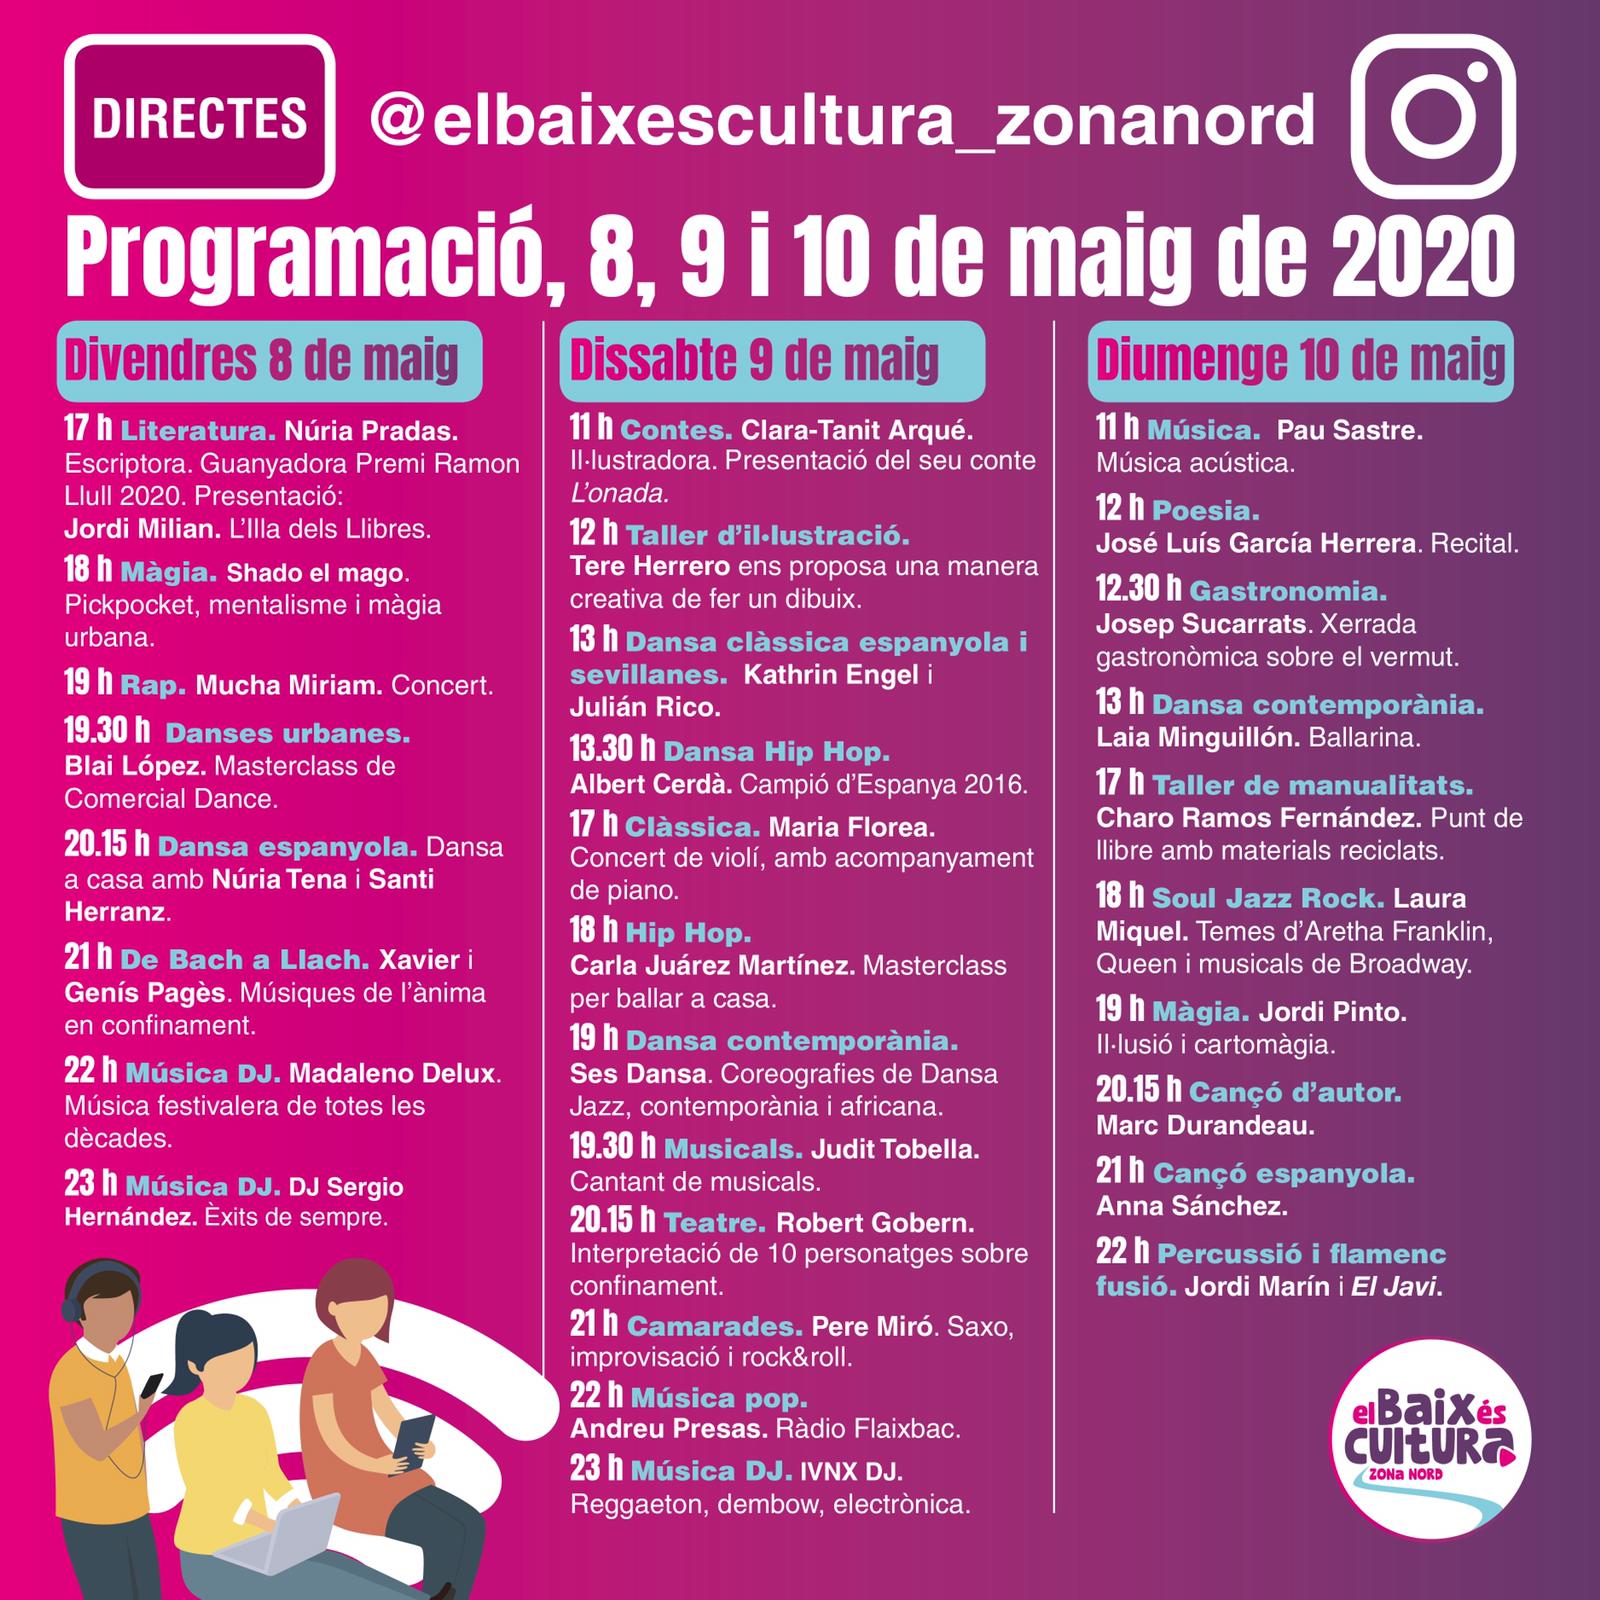 20 ajuntaments del Baix Llobregat organitzen El Baix és cultura, el primer festival  comarcal 'on line' amb un centenar d'actuacions en directe